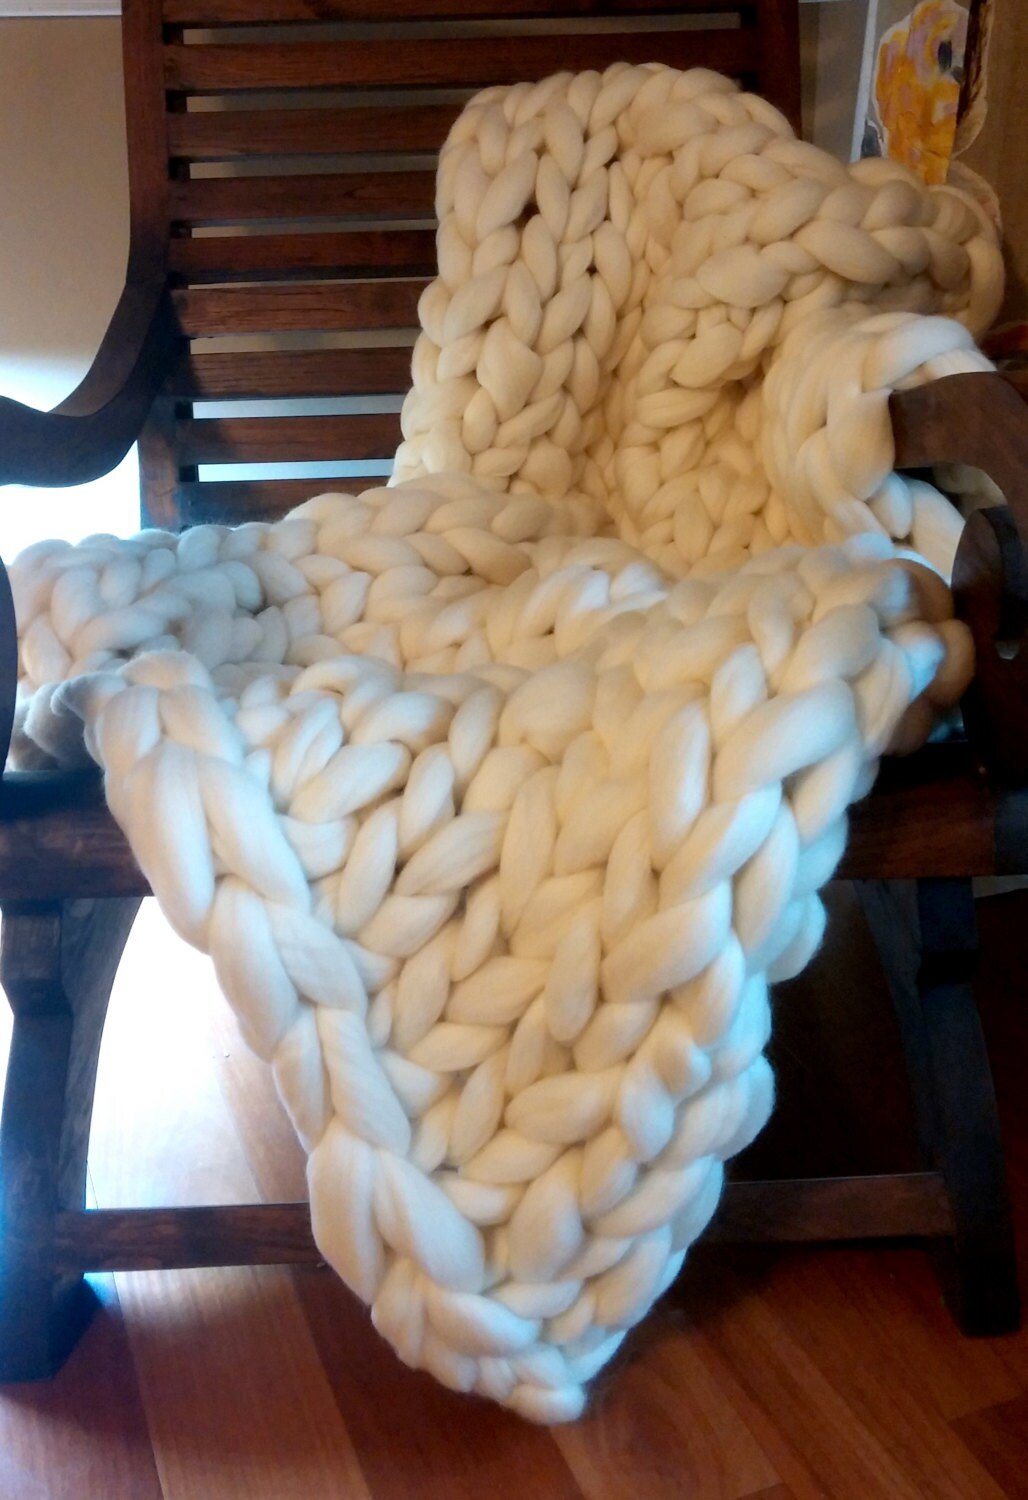 Chunky Knit Blanket Merino Wool 40" x 63" Throw Blanket Giant Knit, Extra Chunky Wool Blanket, Bulky Knit Blanket, Arm Knit Cozy